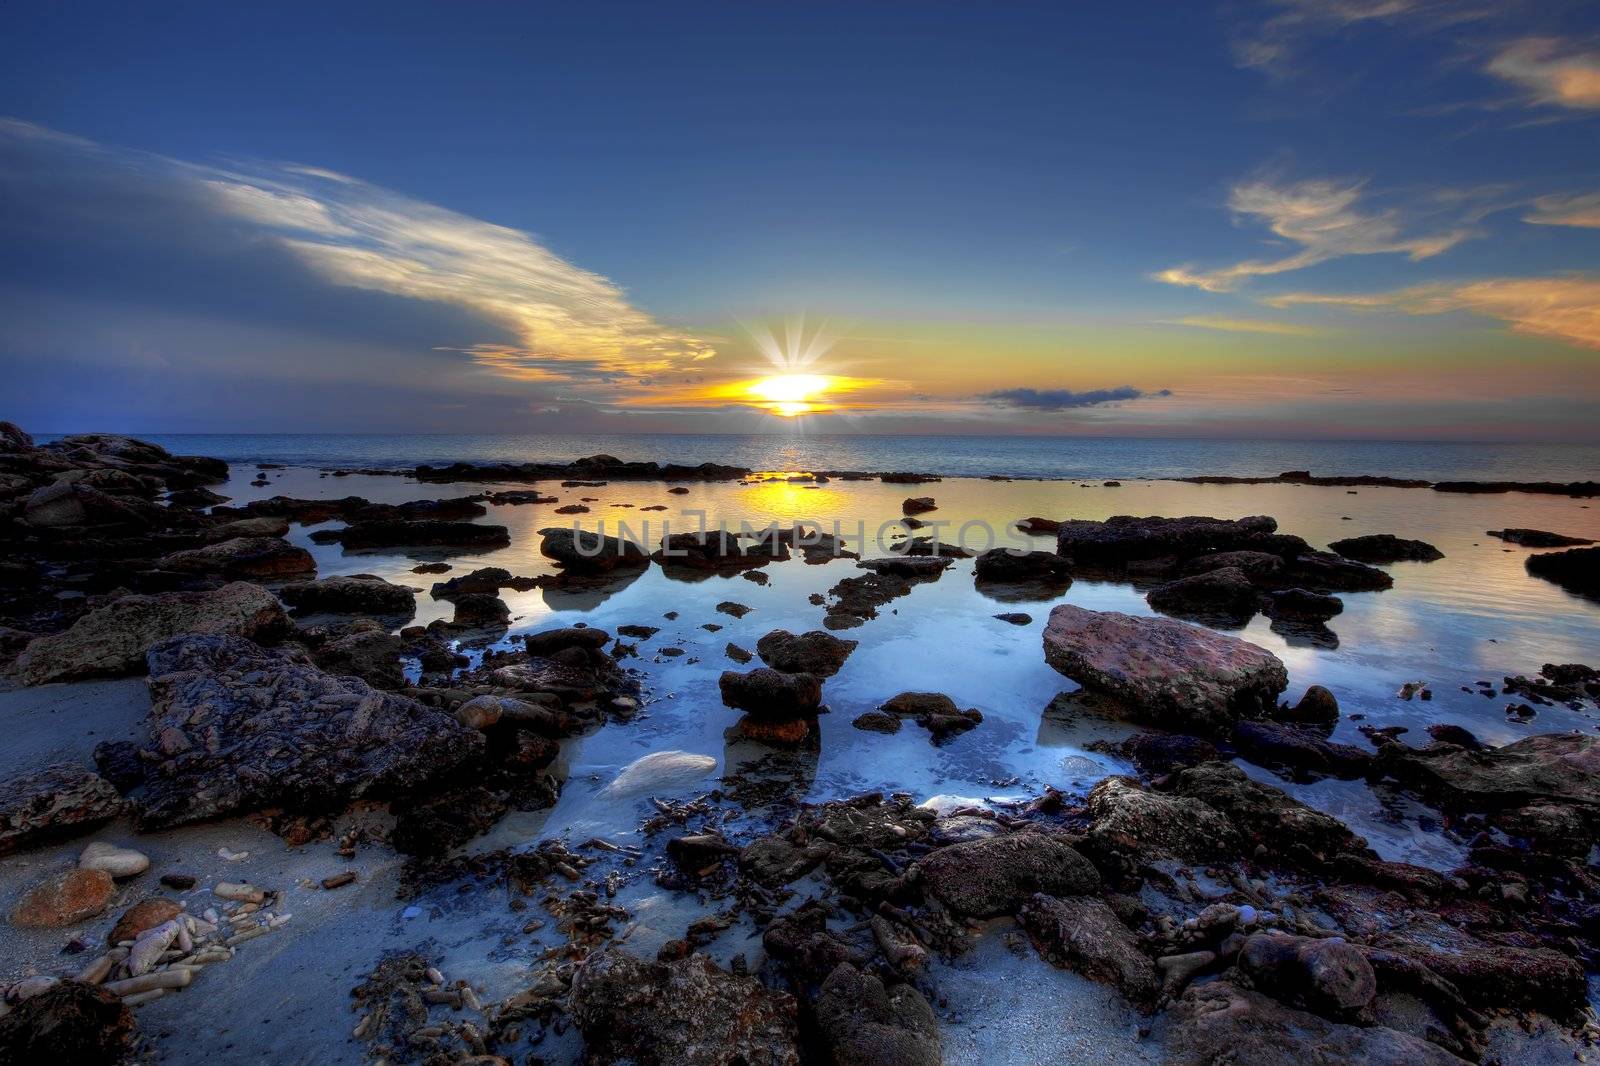 Sunset Bonaire by kjorgen